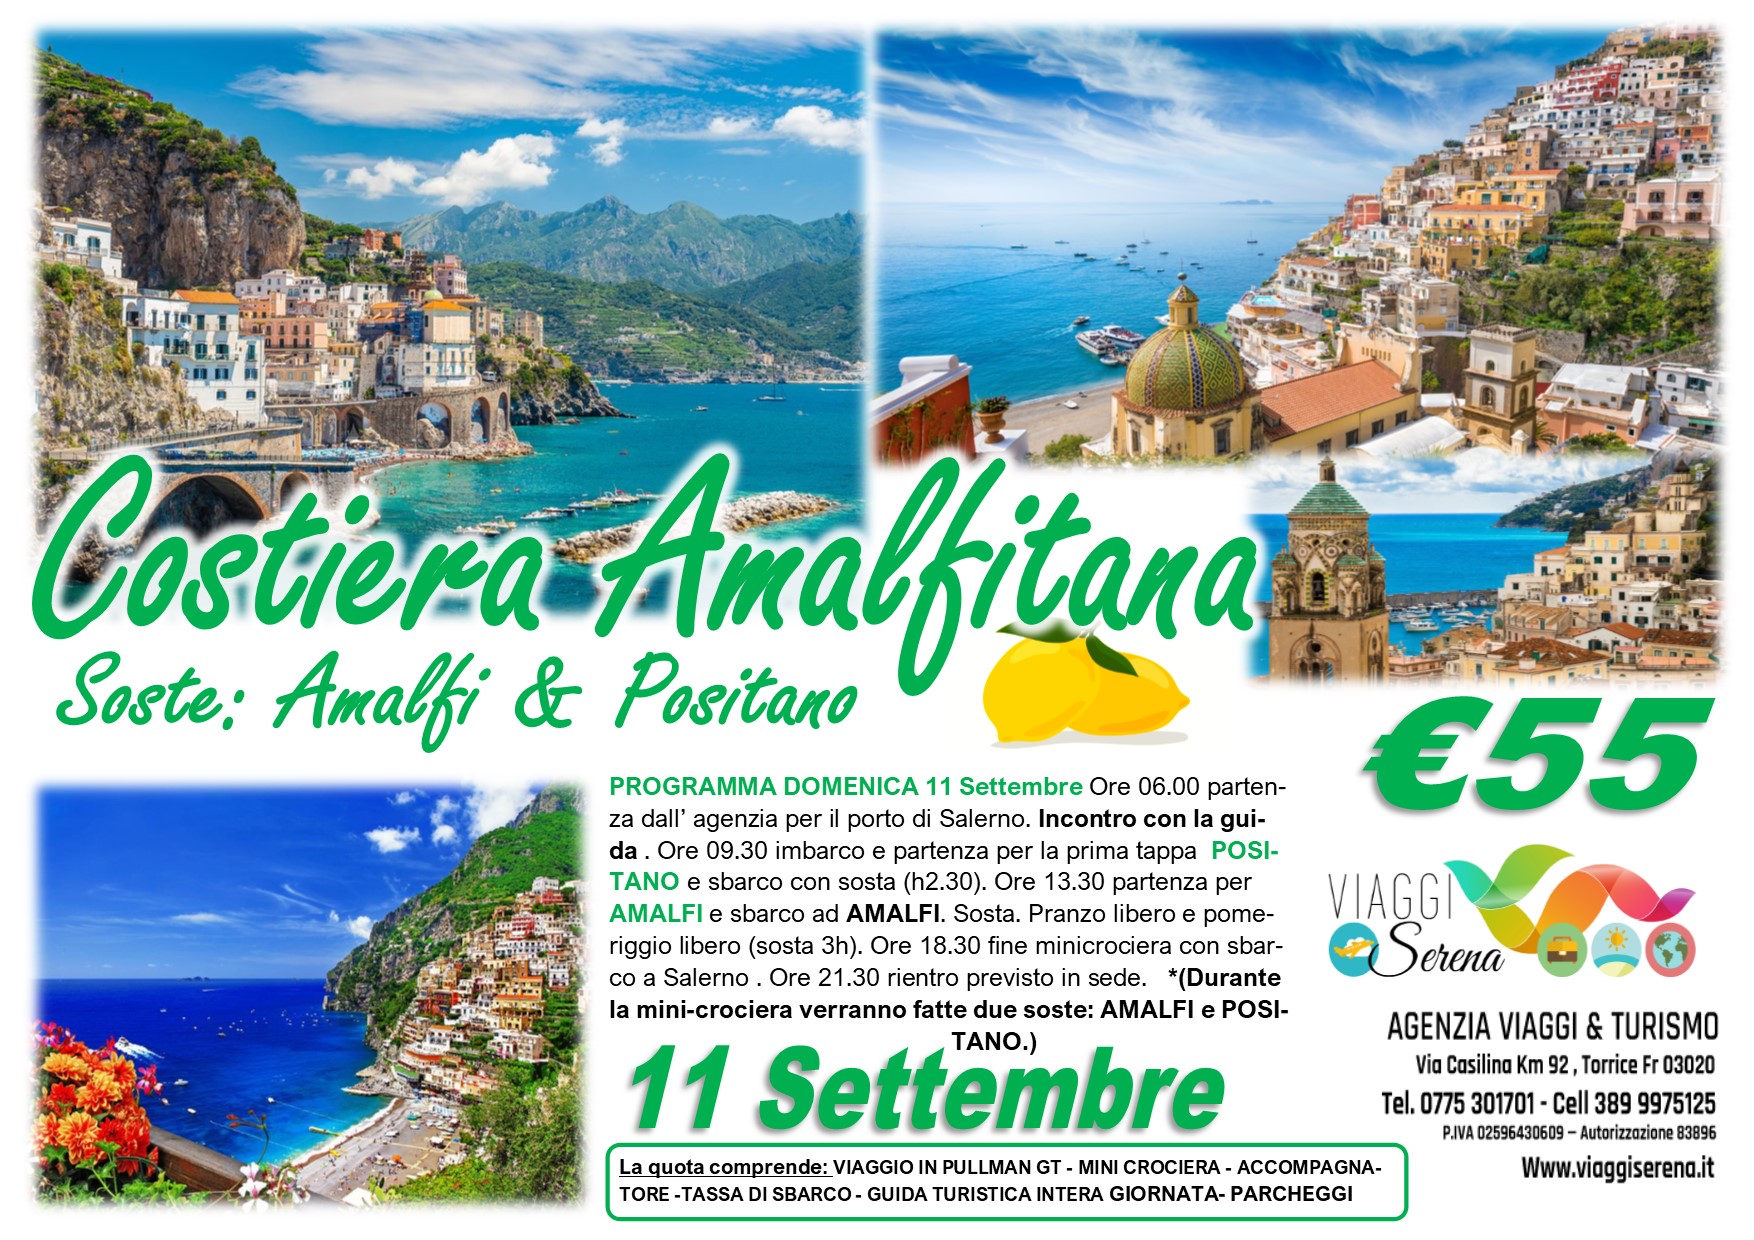 Viaggi di Gruppo: MINI CROCIERA Costiera Amalfitana “Positano & Amalfi” 11 Settembre € 55,00